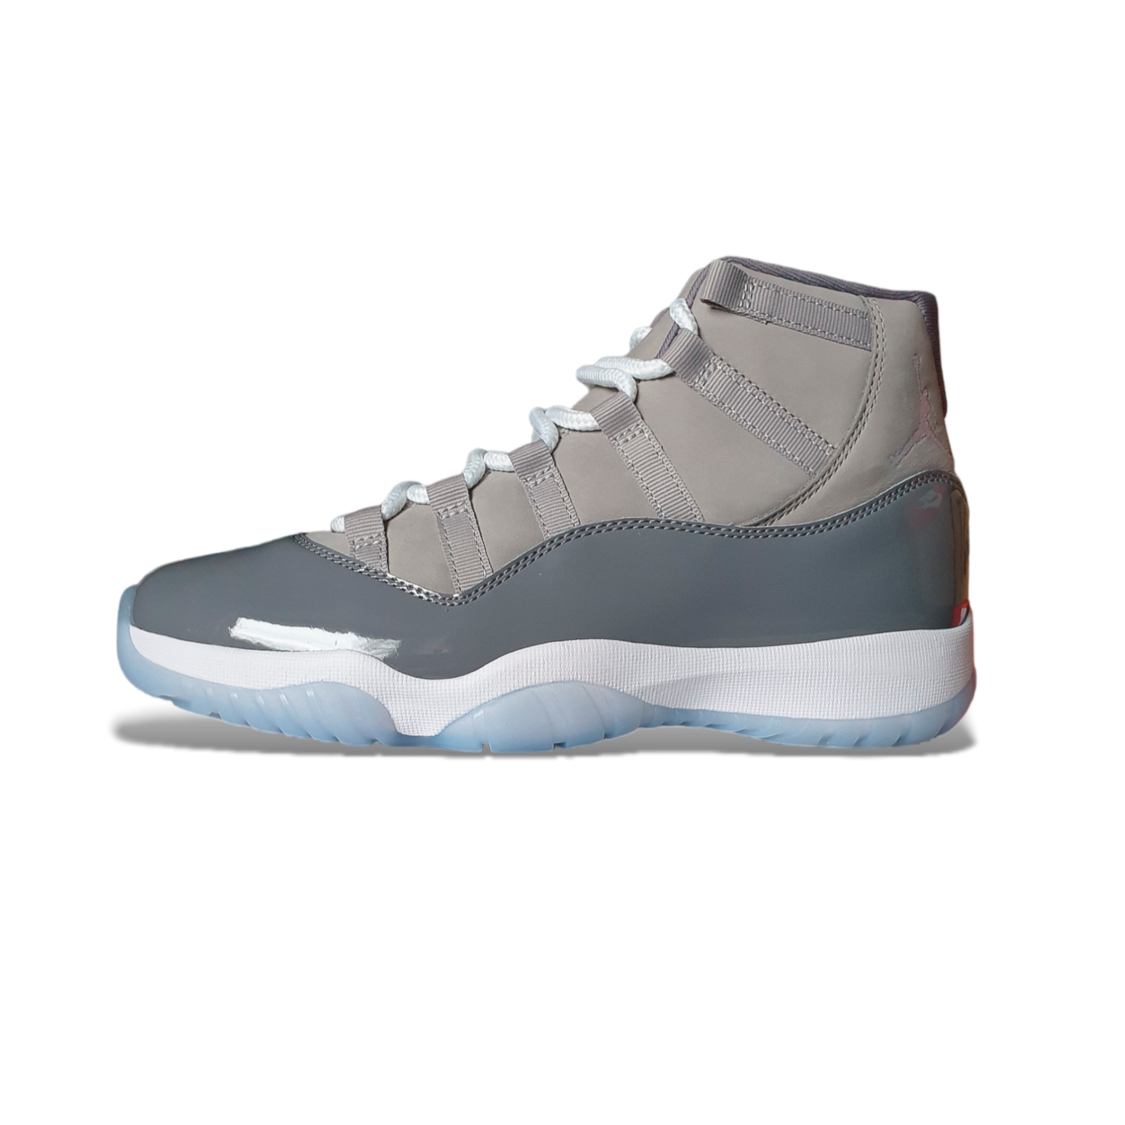 Nike Air Jordan 11 “Cool Grey“